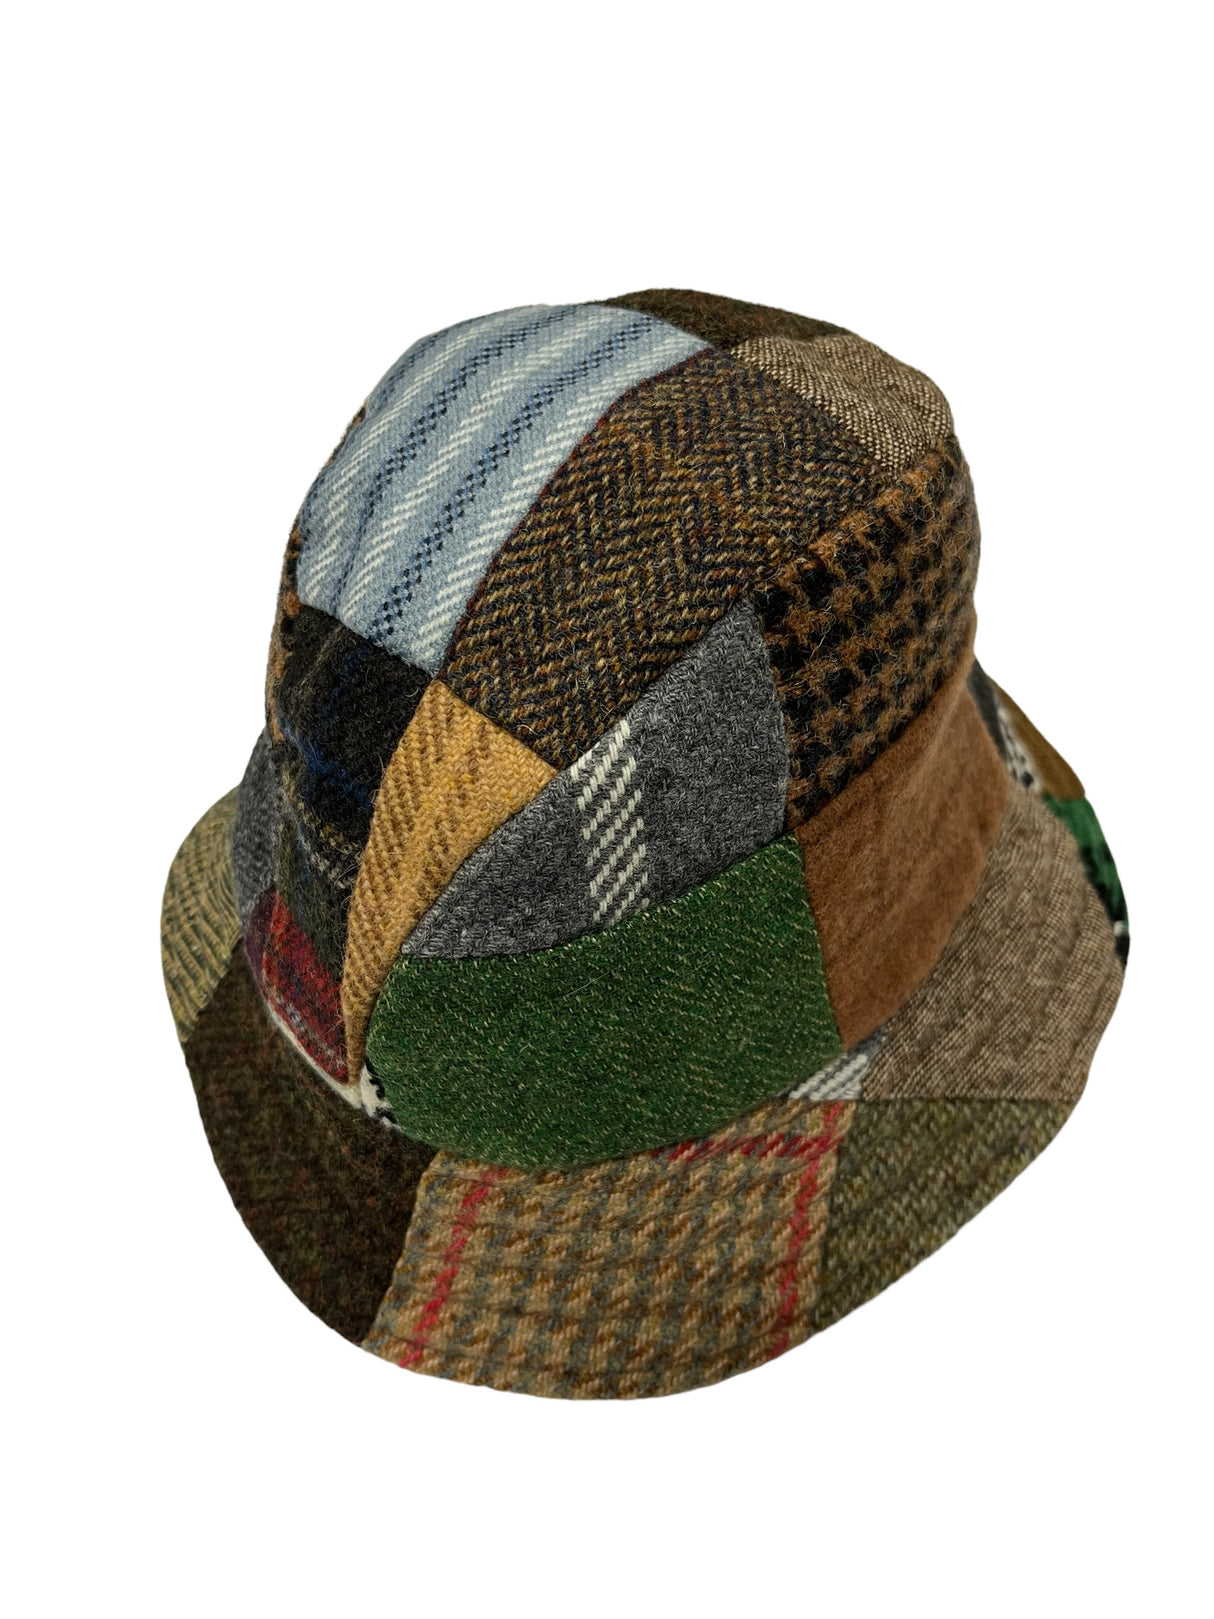 Eske Travel Hat - Patchwork Tweed